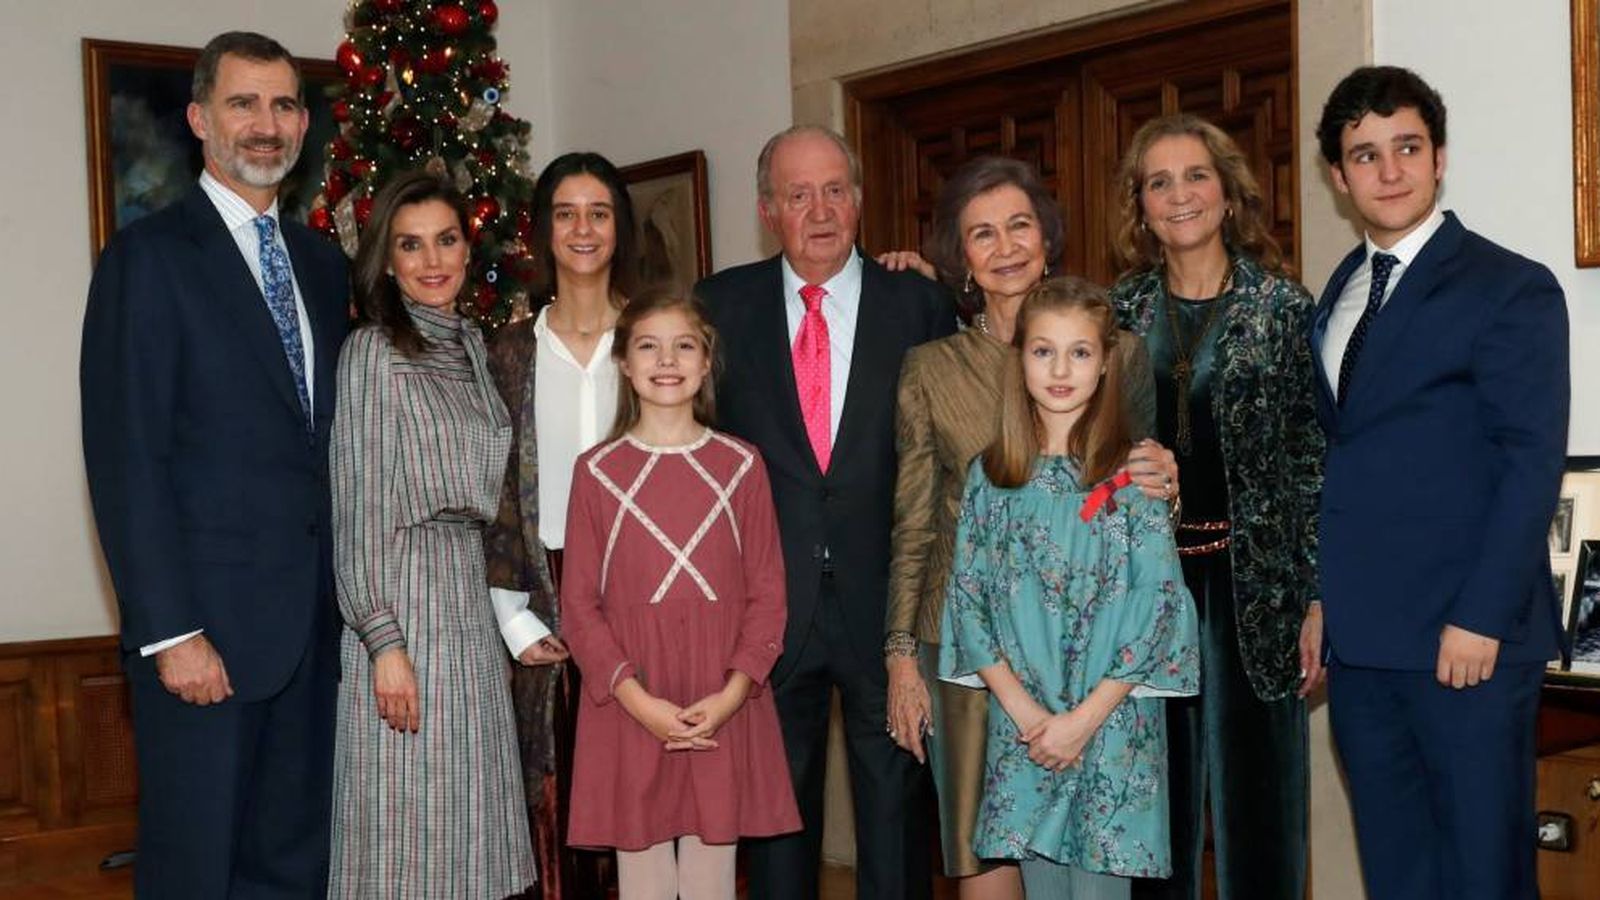 Foto: Fotografía del almuerzo familiar en el Palacio de La Zarzuela con motivo del 80 aniversario de don Juan Carlos. (Casa Real)